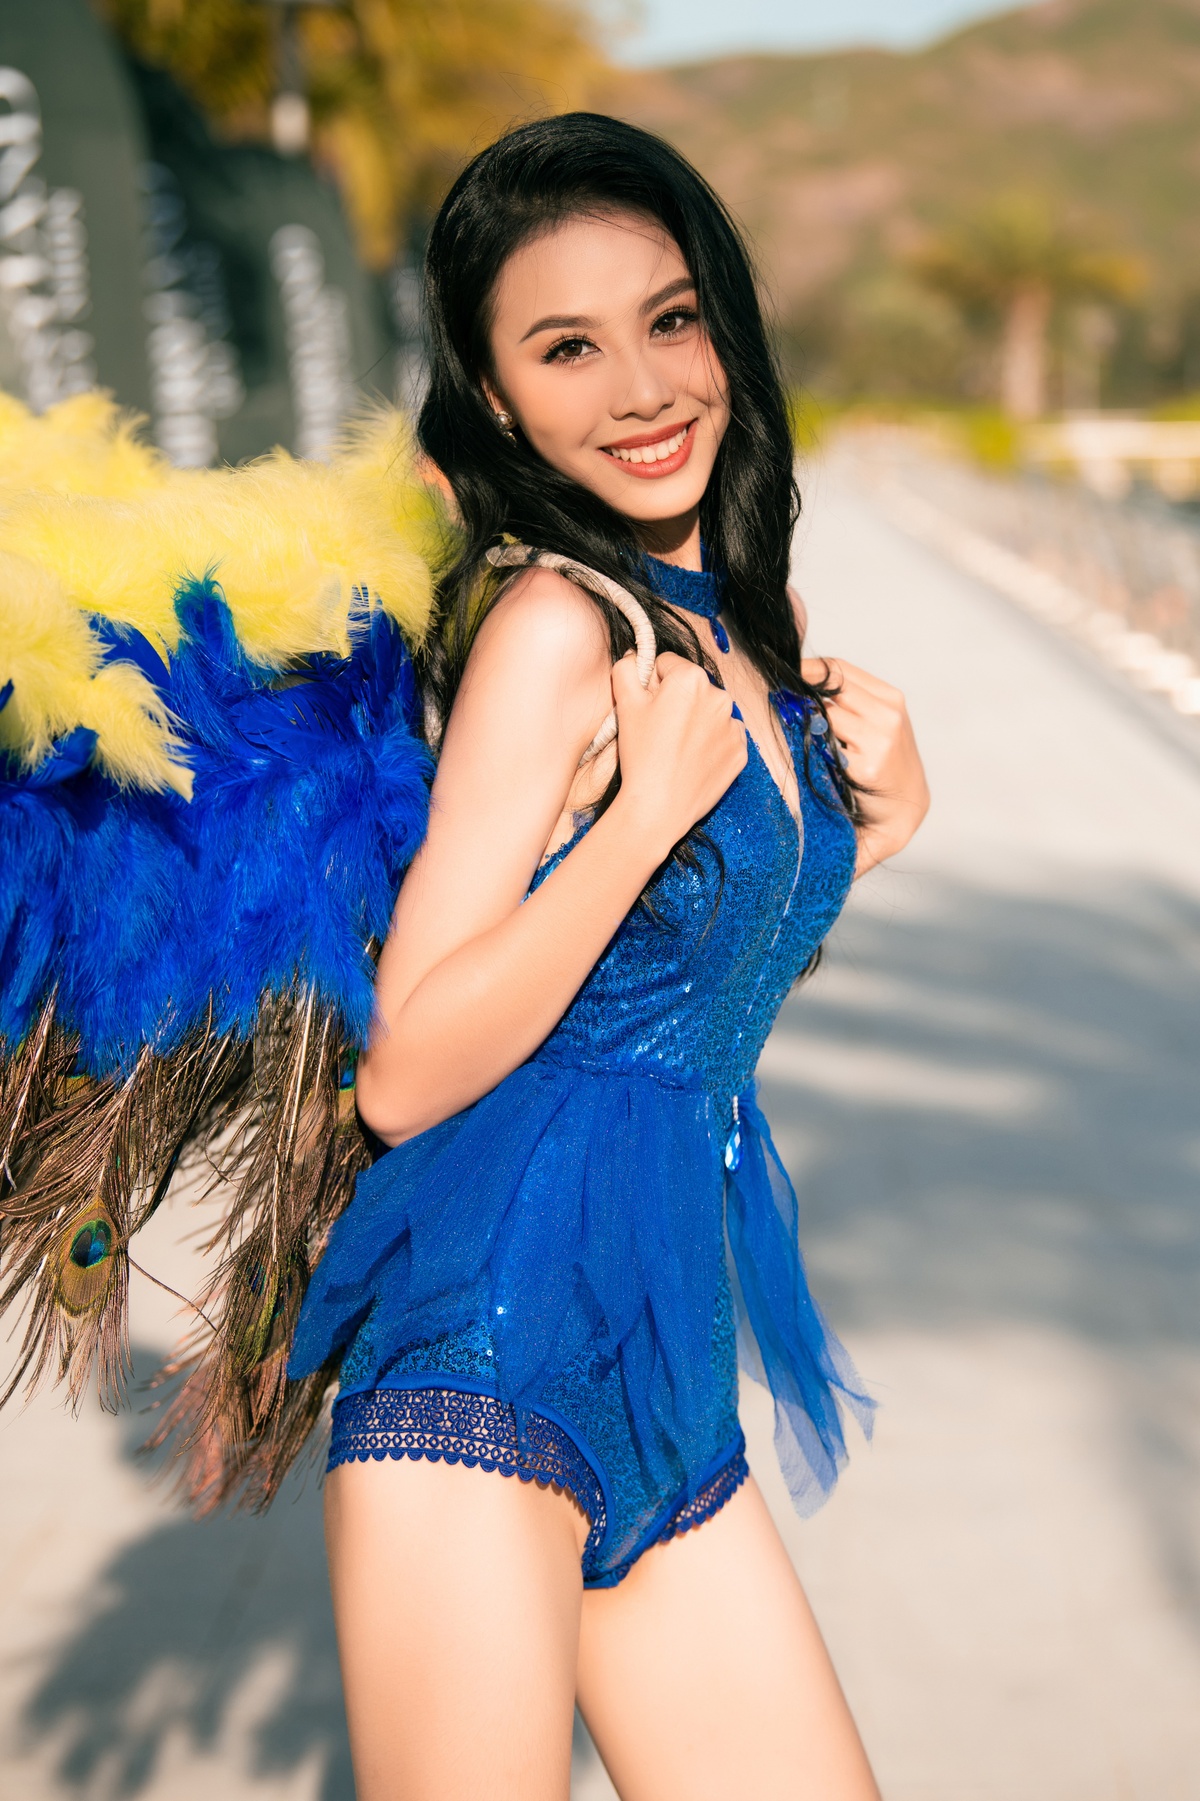 Nhan sắc đời thường của Top 3 Hoa hậu Việt Nam: Á hậu 2 gợi cảm, khác biệt với Hoa Hậu và Á hậu 1 - Ảnh 8.